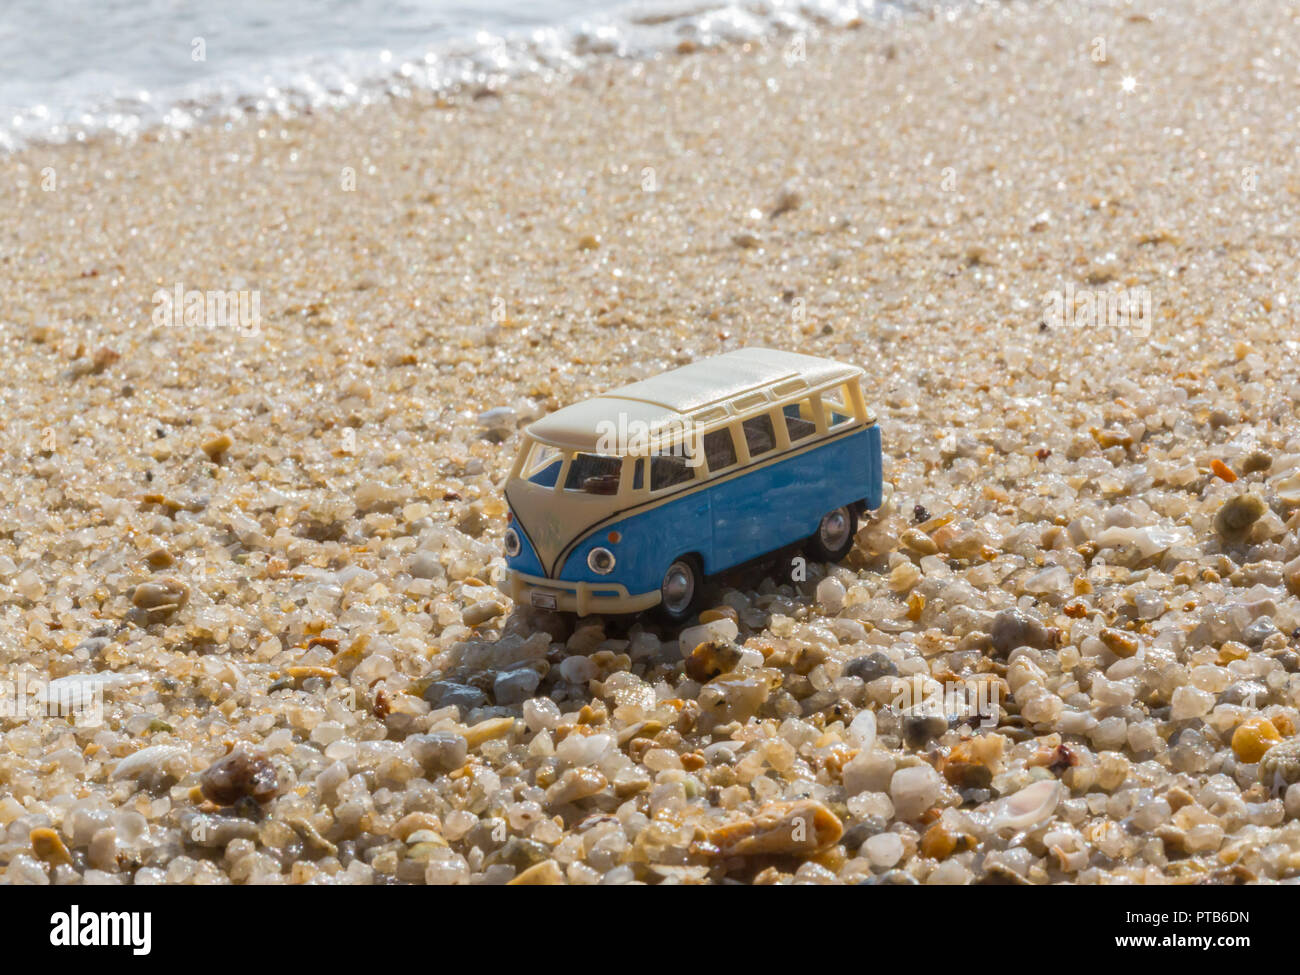 Sommer Urlaub auf der tropischen Insel auf dem Hintergrund Oldtimer van bus Volkswagen mit Koffer, schöne Natur mit Meer Ozean Wasser Stockfoto